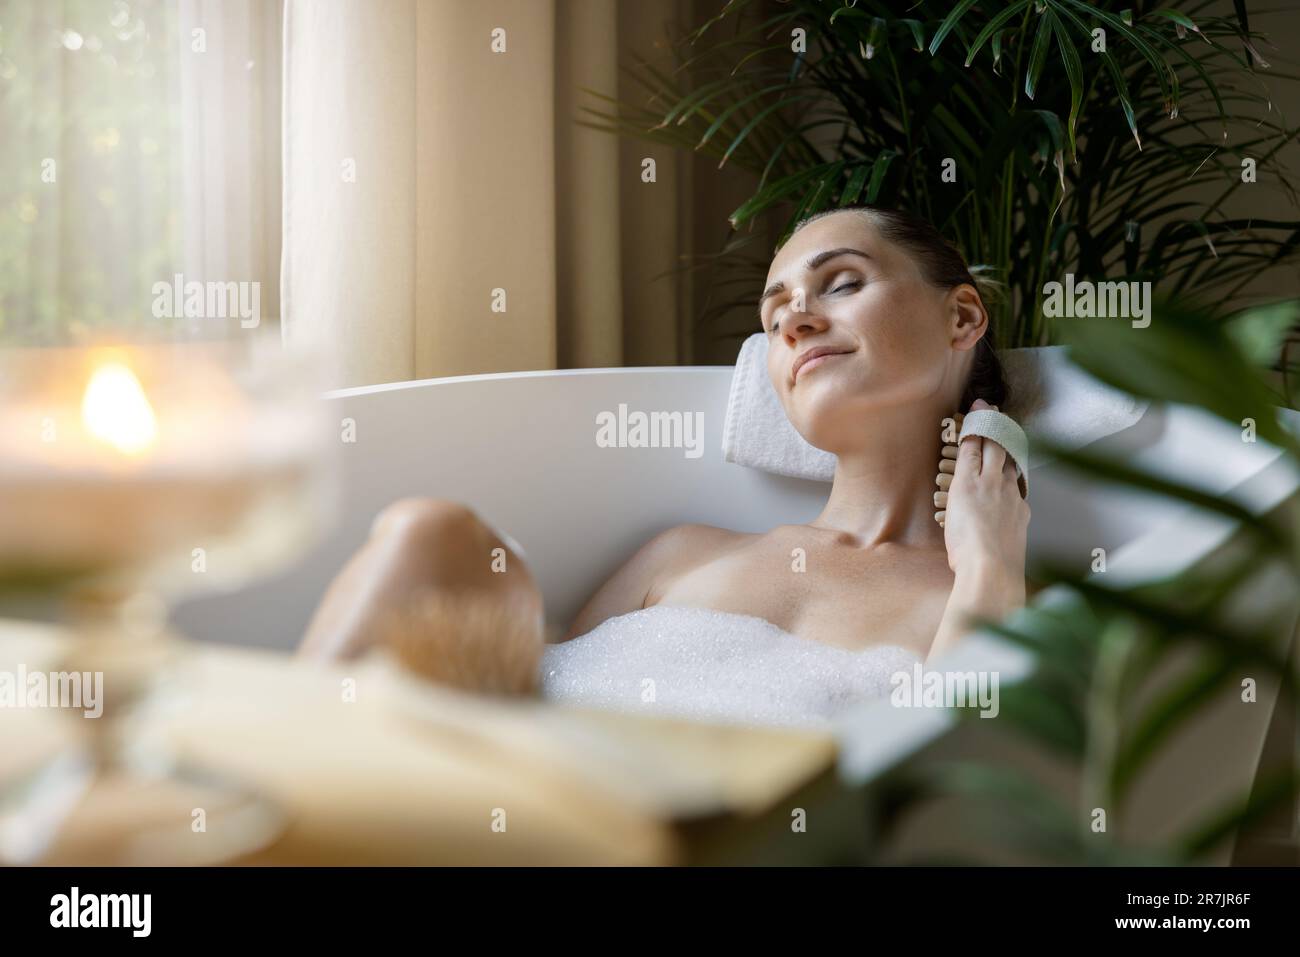 donna che gode di vasca idromassaggio con schiuma e spazzola per massaggio corpo Foto Stock